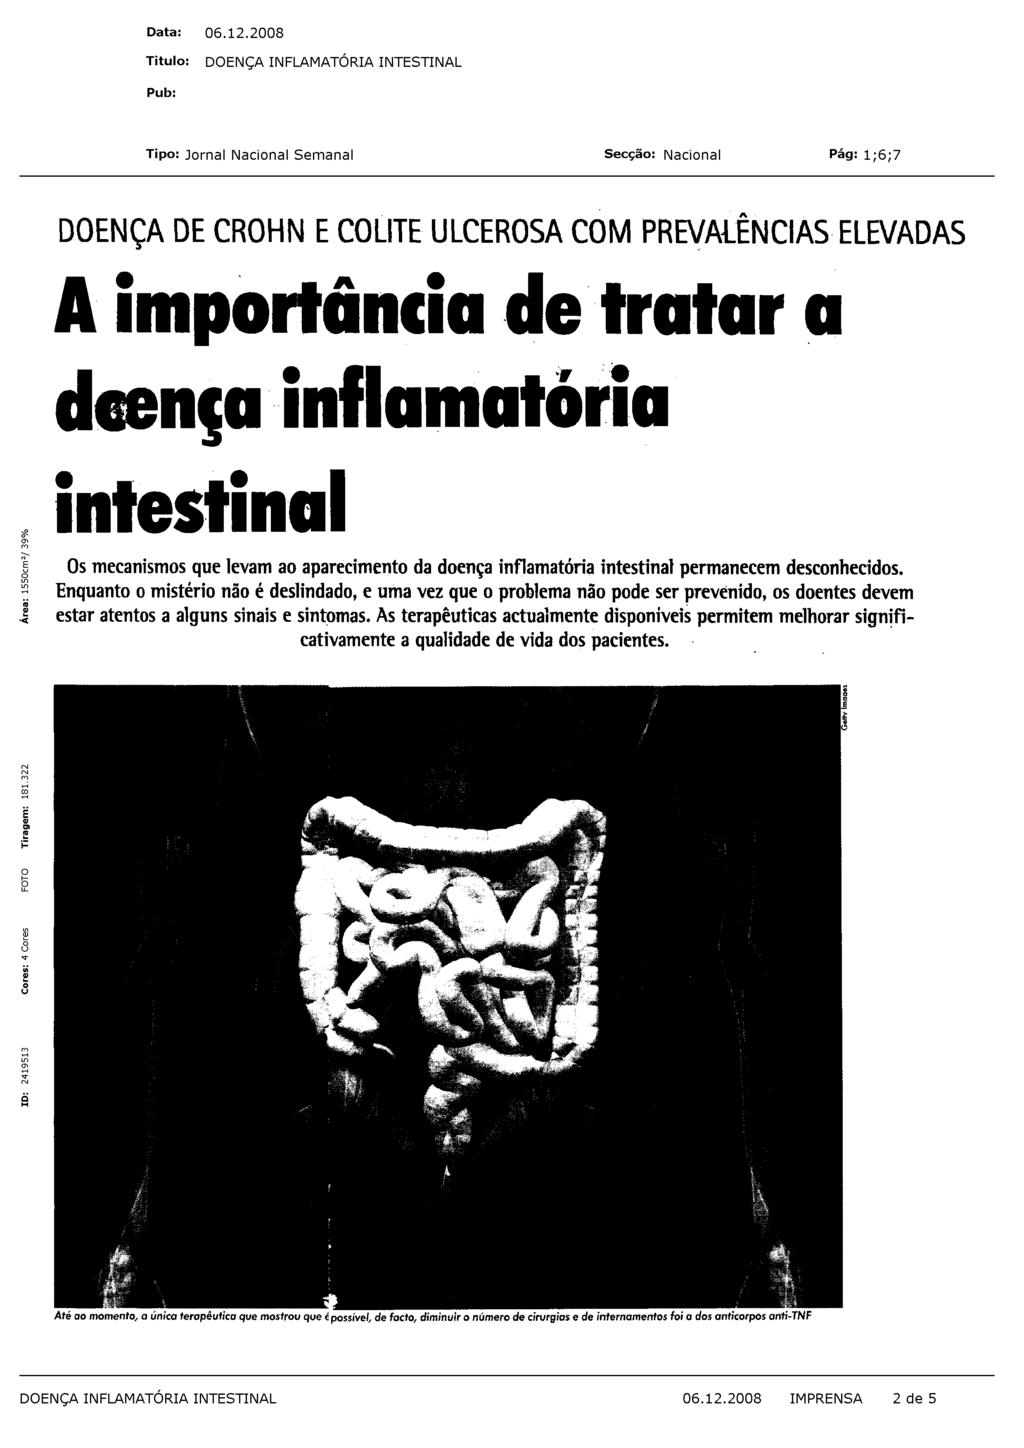 A Saúde Pública doença inflamatória intestinal engloba duas patologias: a doença de Crohn e a colite ulcerosa.